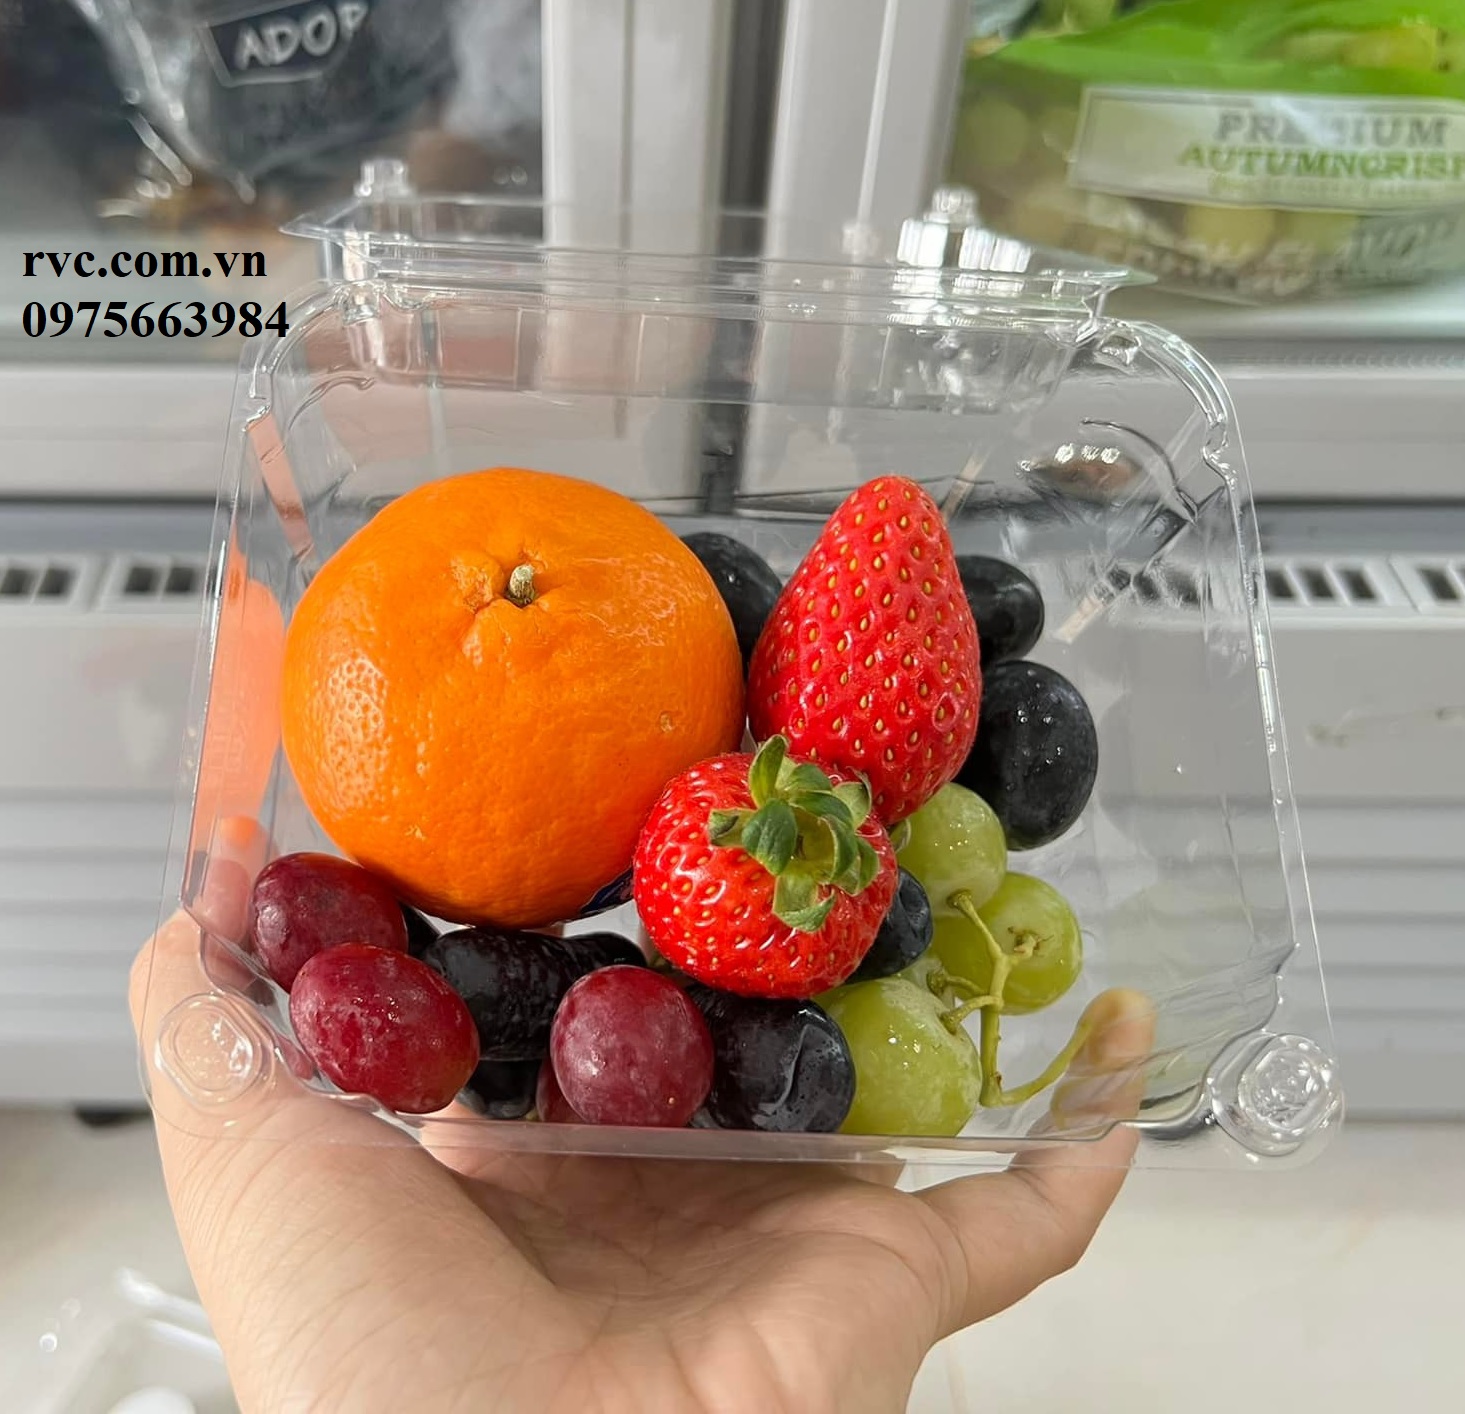 hộp-nhựa-đựng-trái-cây - Nơi bán hộp nhựa đựng hoa quả 500g P500D giá rẻ nhất HCM  1083960765546230528